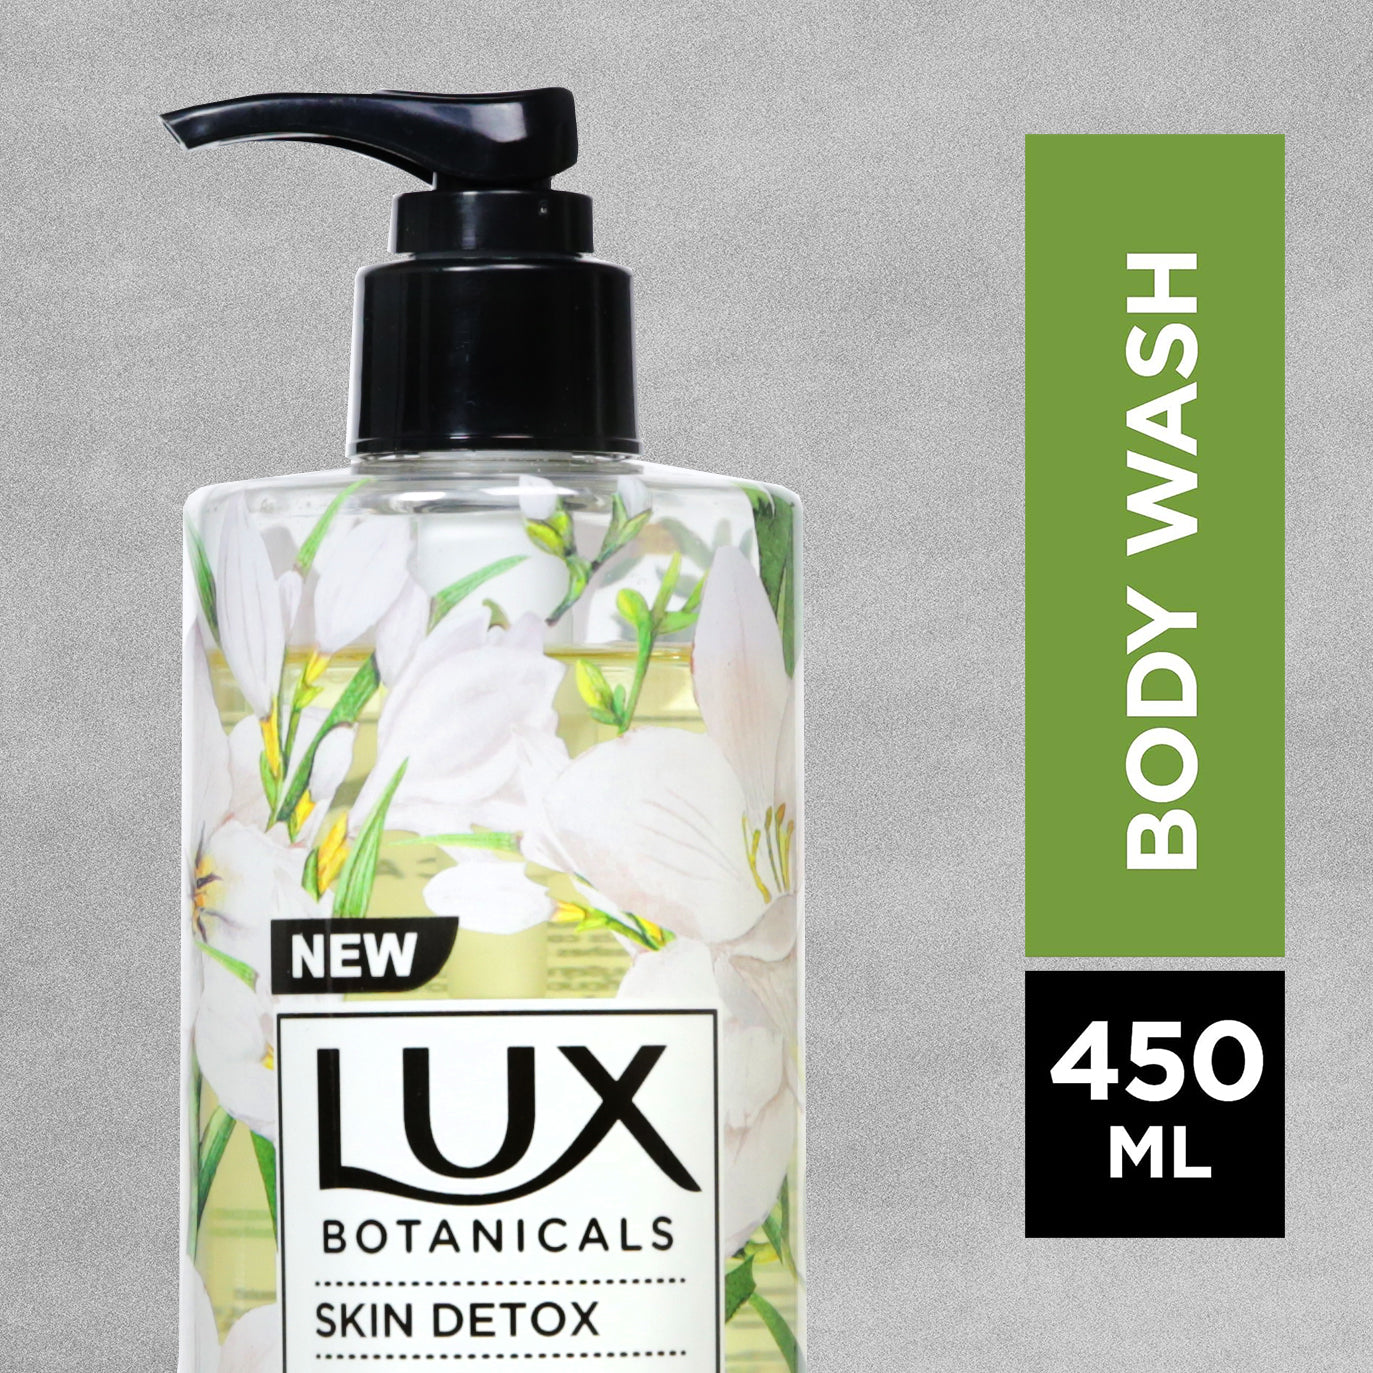 Lux Botanicals Skin Detox Body Wash 450ml - Freesia & Tea Tree Oil